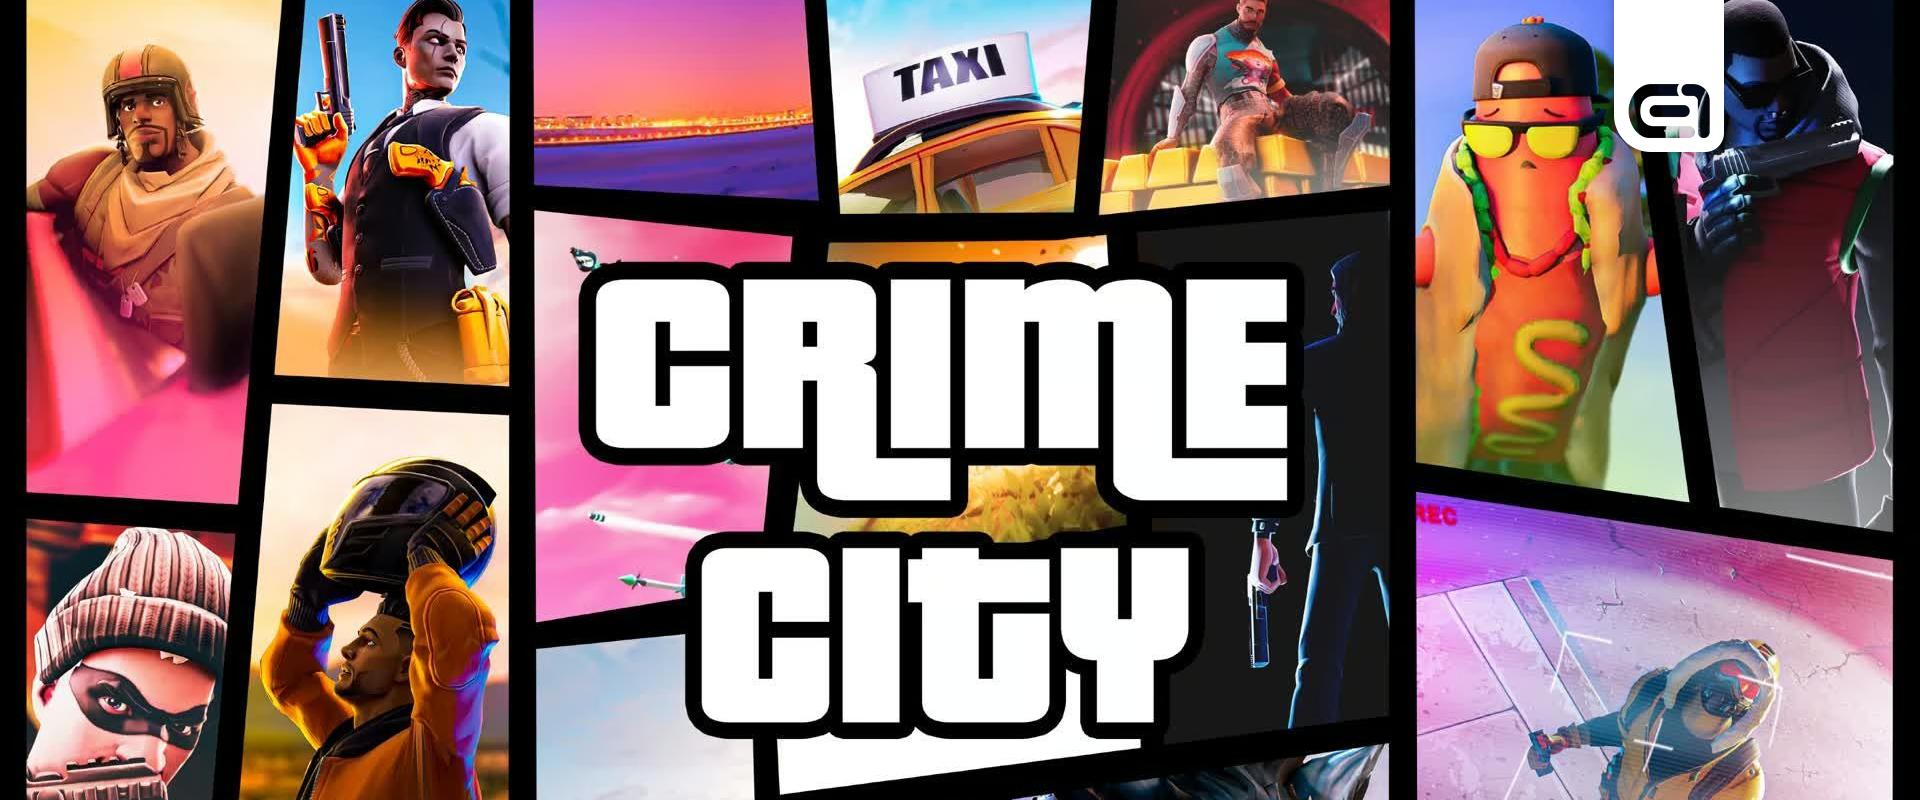 Íme a GTA Vice City, ahogy még sosem láttad